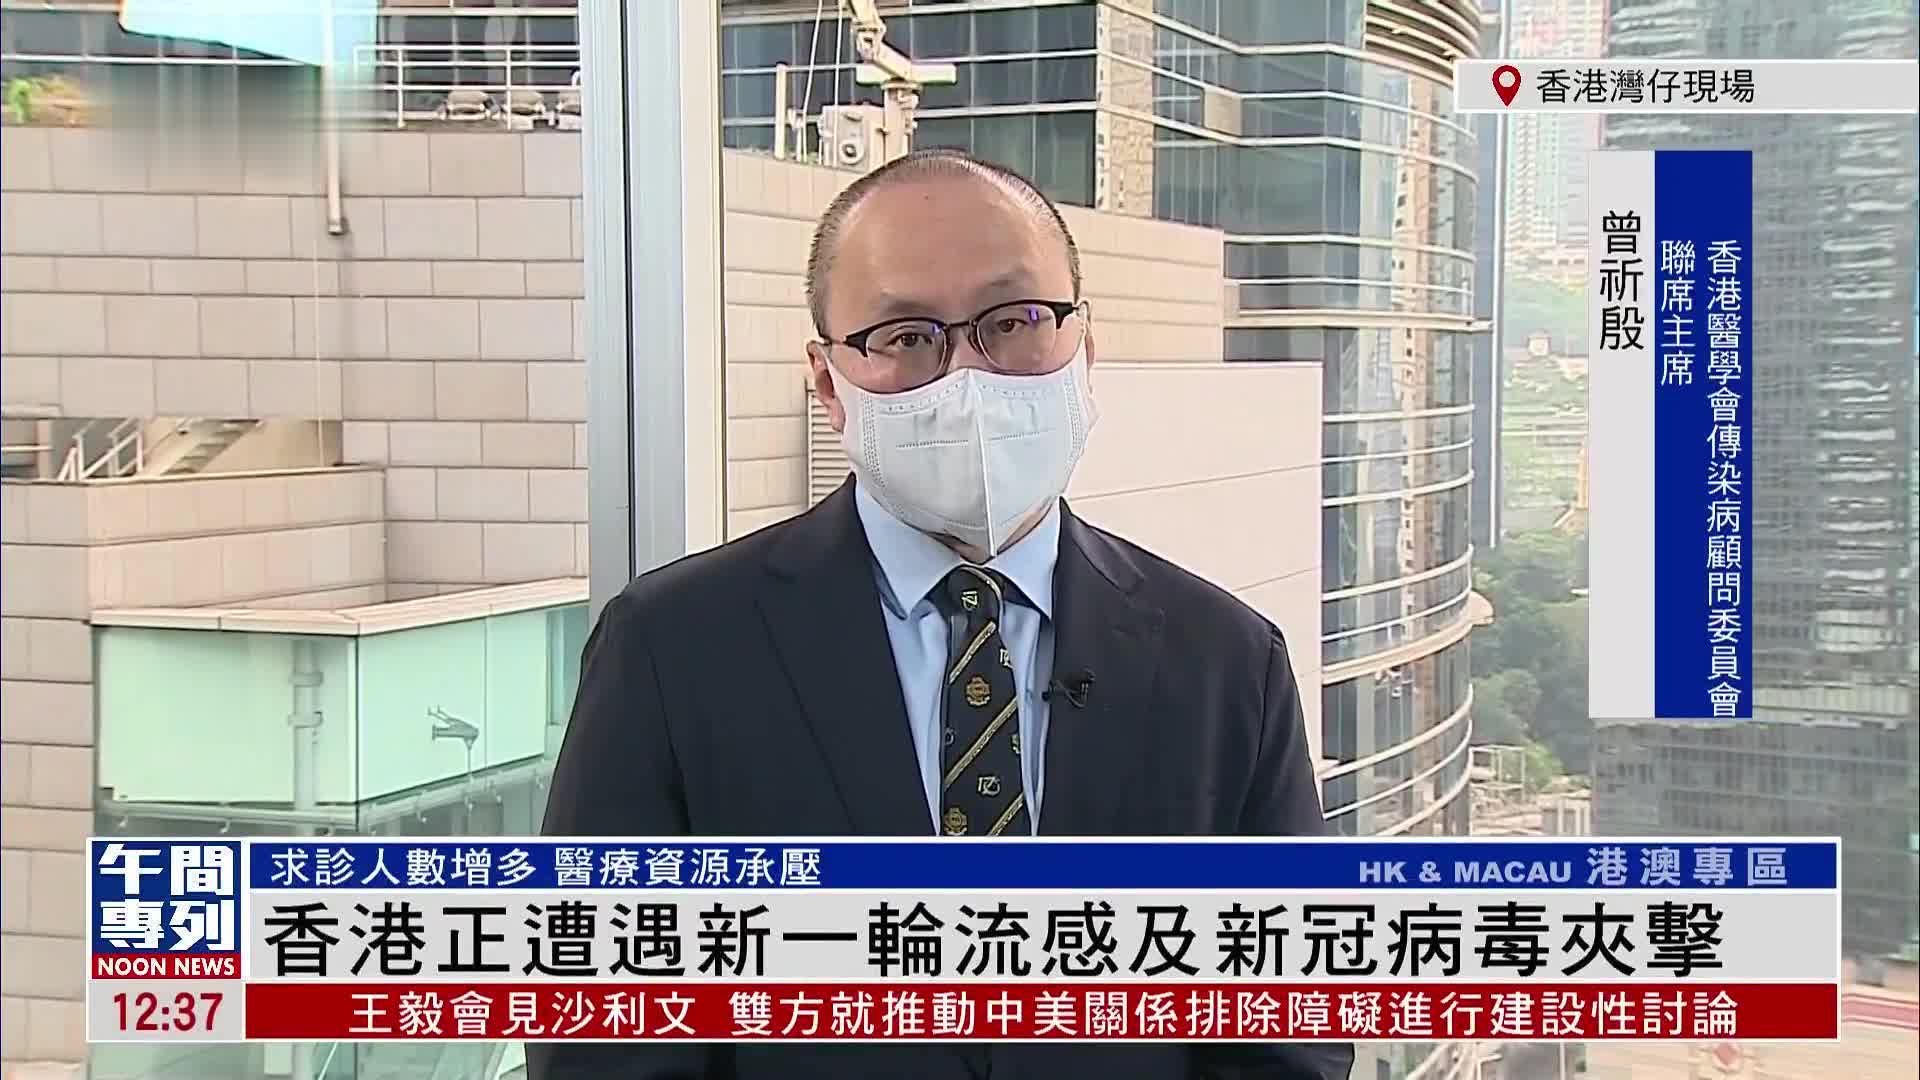 香港今夏因流感死亡人数已升至315人 ！！去香港旅行要小心！ - Leesharing